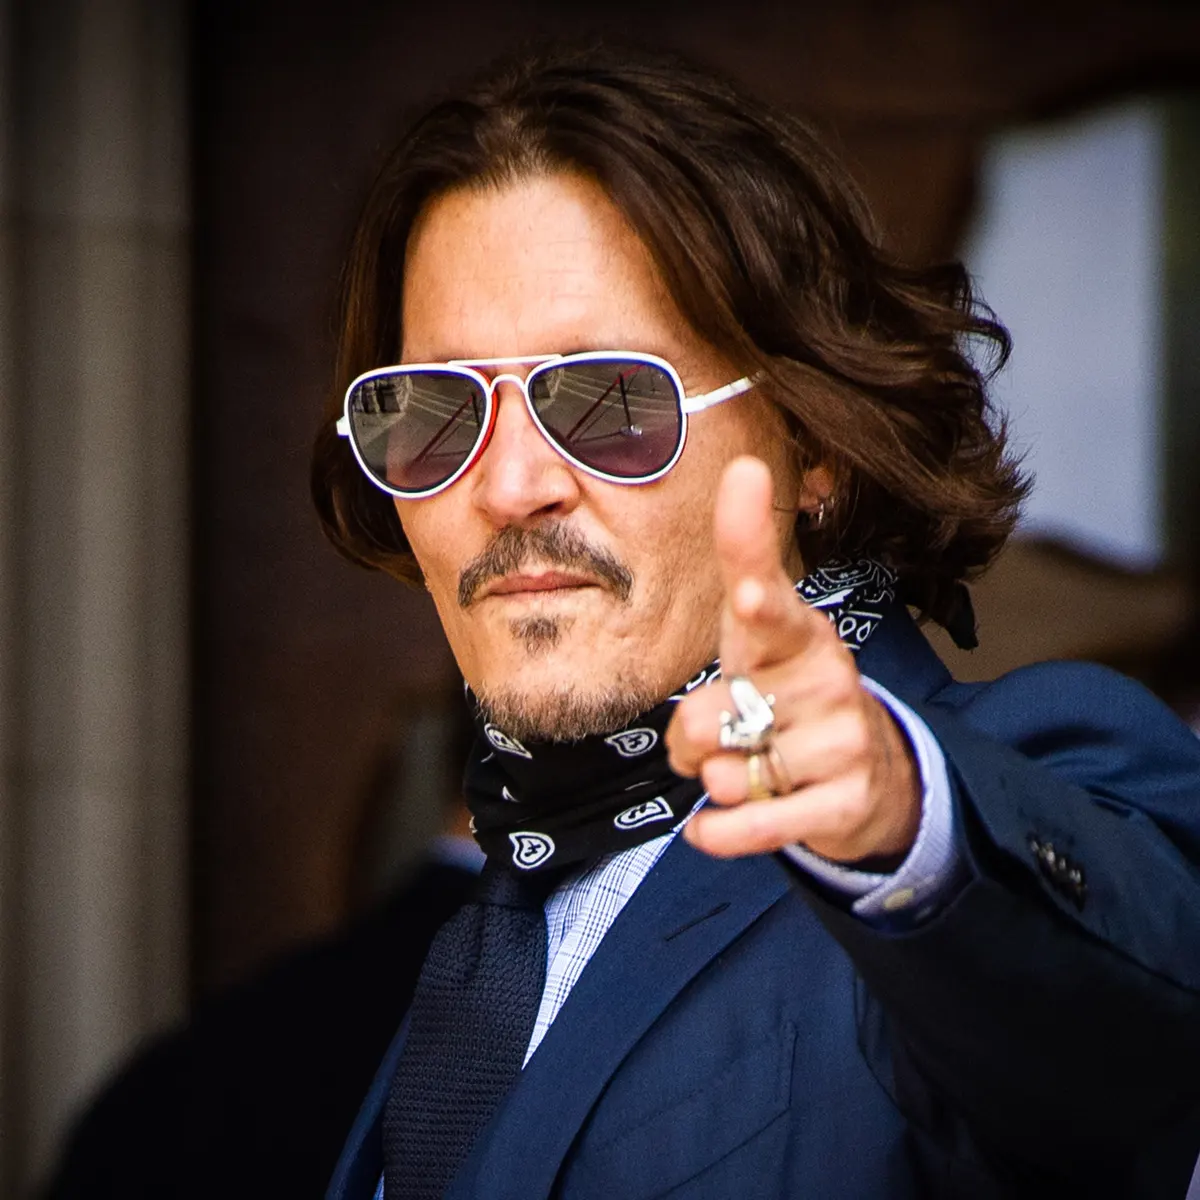 Mr. Johnny Depp